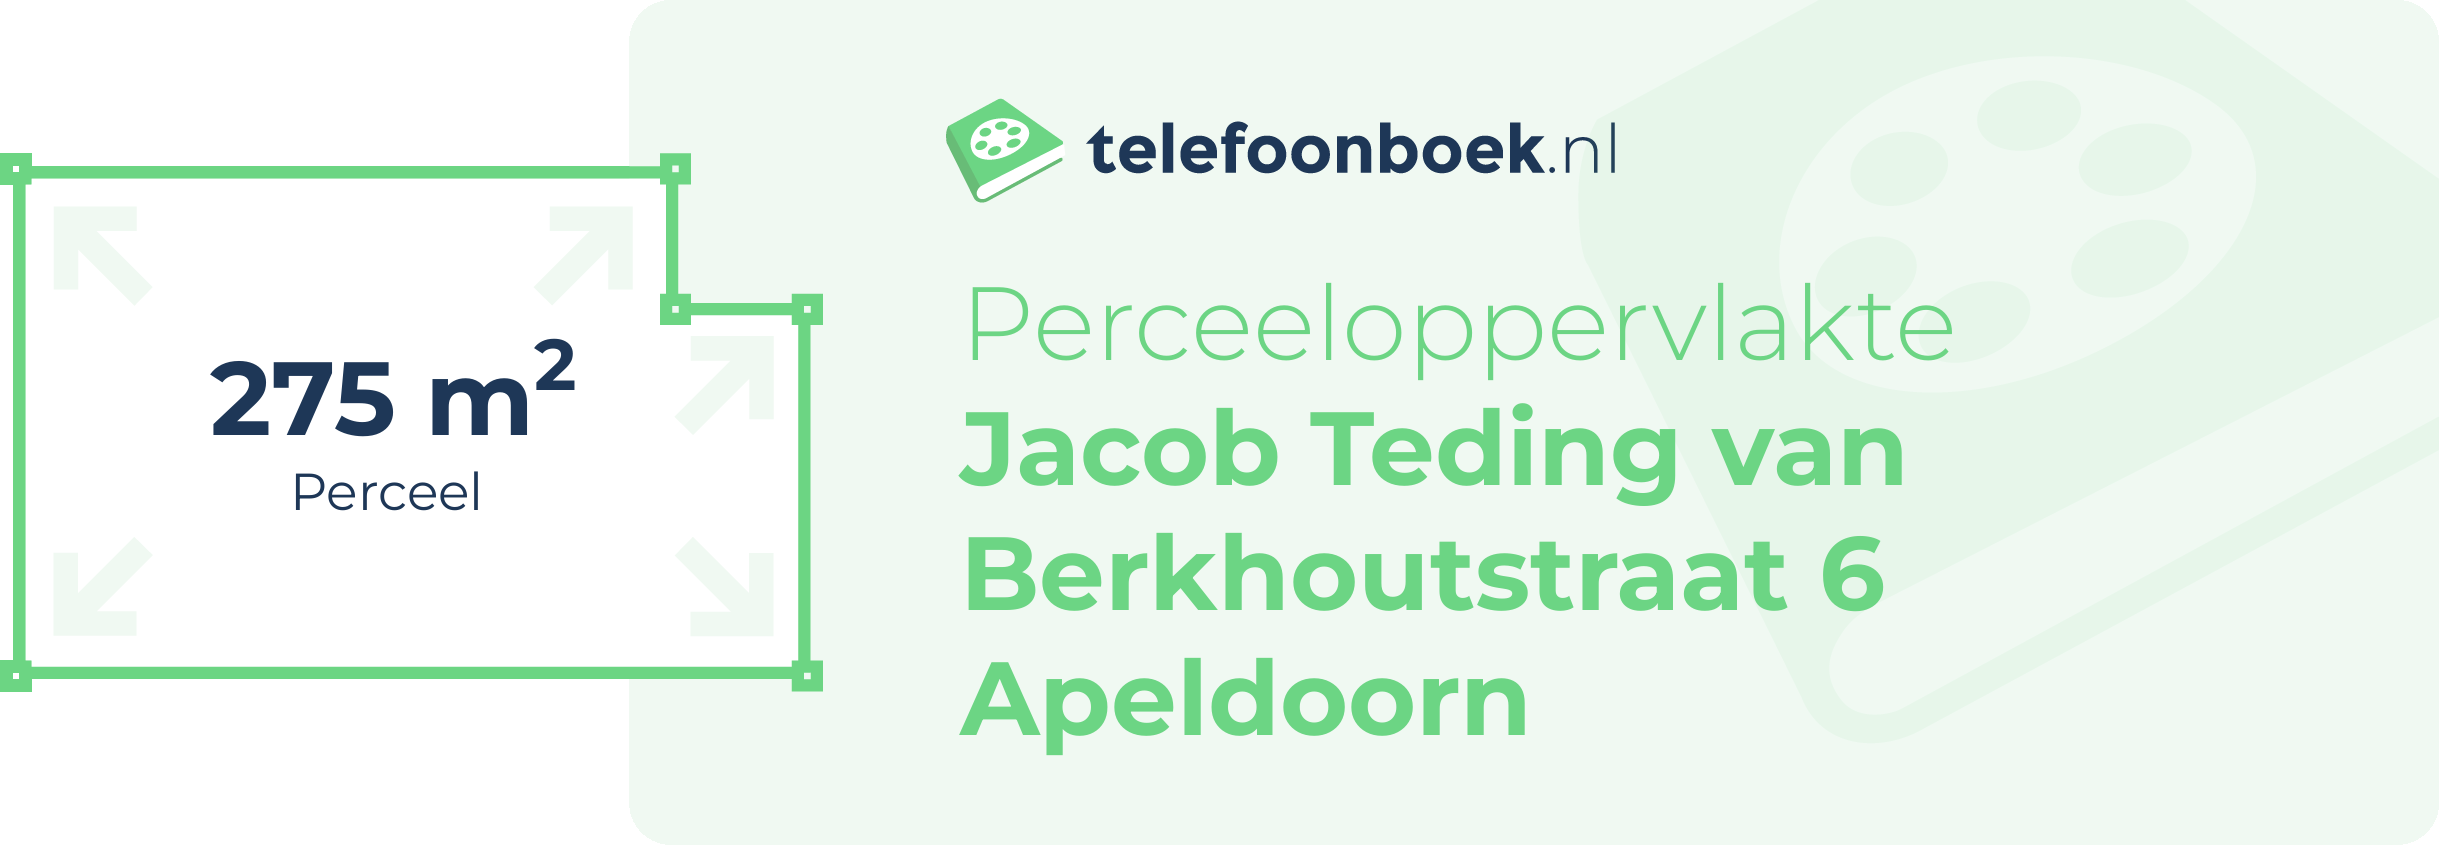 Perceeloppervlakte Jacob Teding Van Berkhoutstraat 6 Apeldoorn